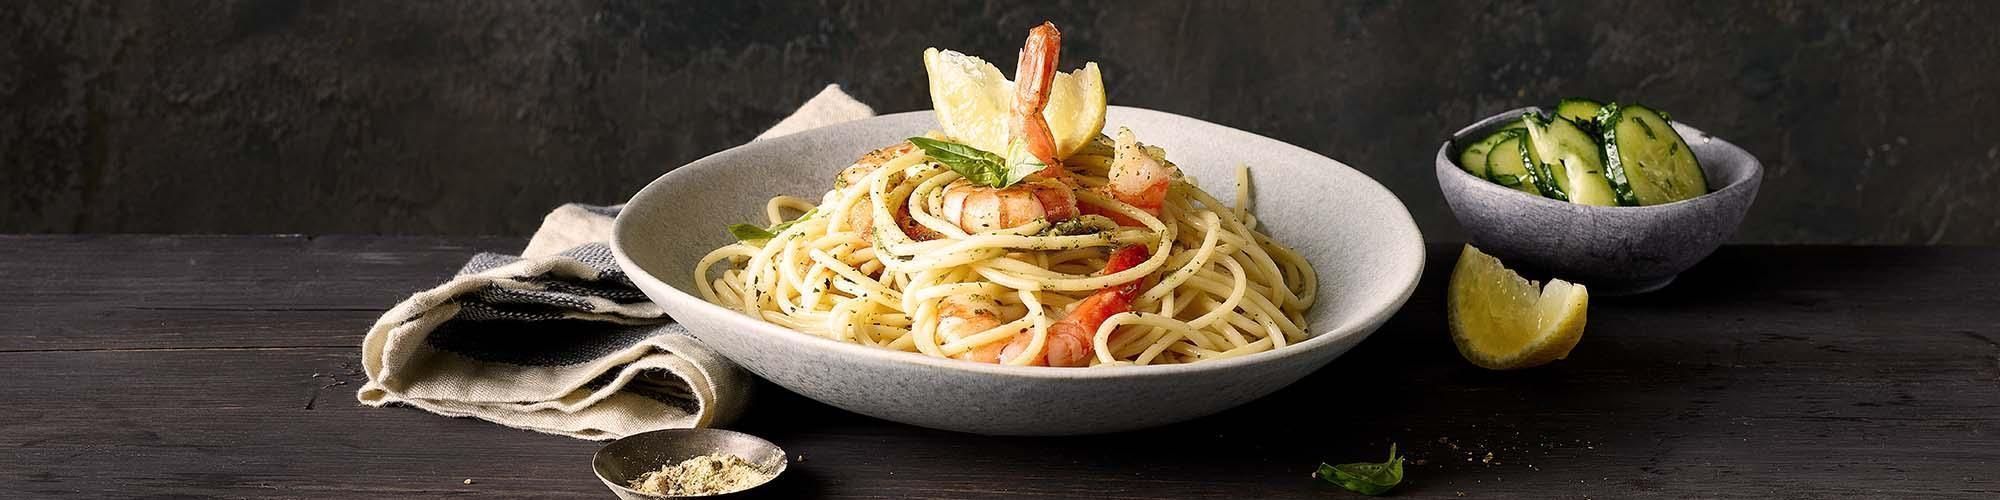 Spaghetti aglio e olio con gamberetti